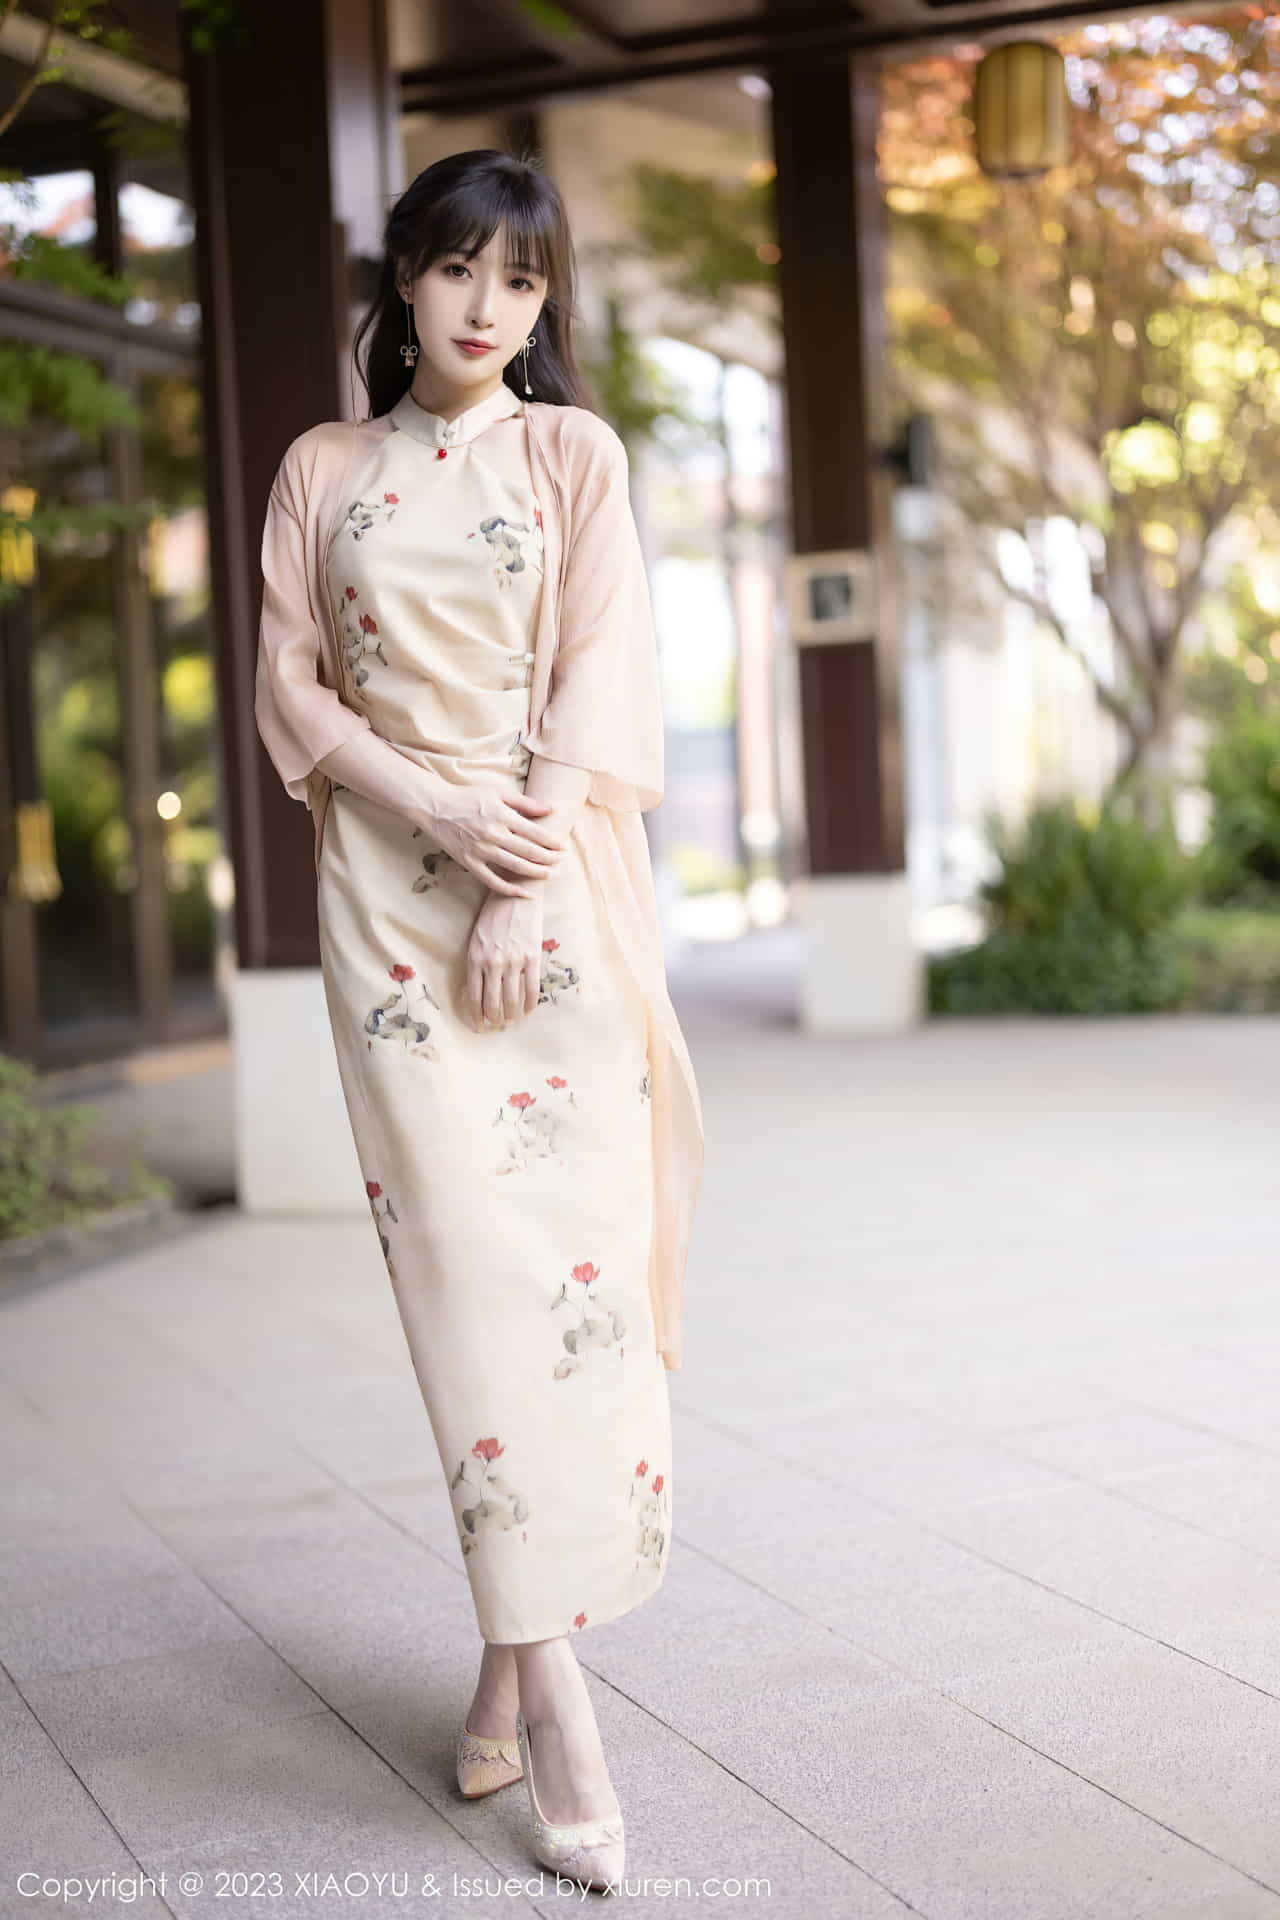 Линь Синлань фотографировалась во многих нарядах, ее шелковистые ноги прекрасны и очаровательны, а фигура очаровательна и очаровательна.